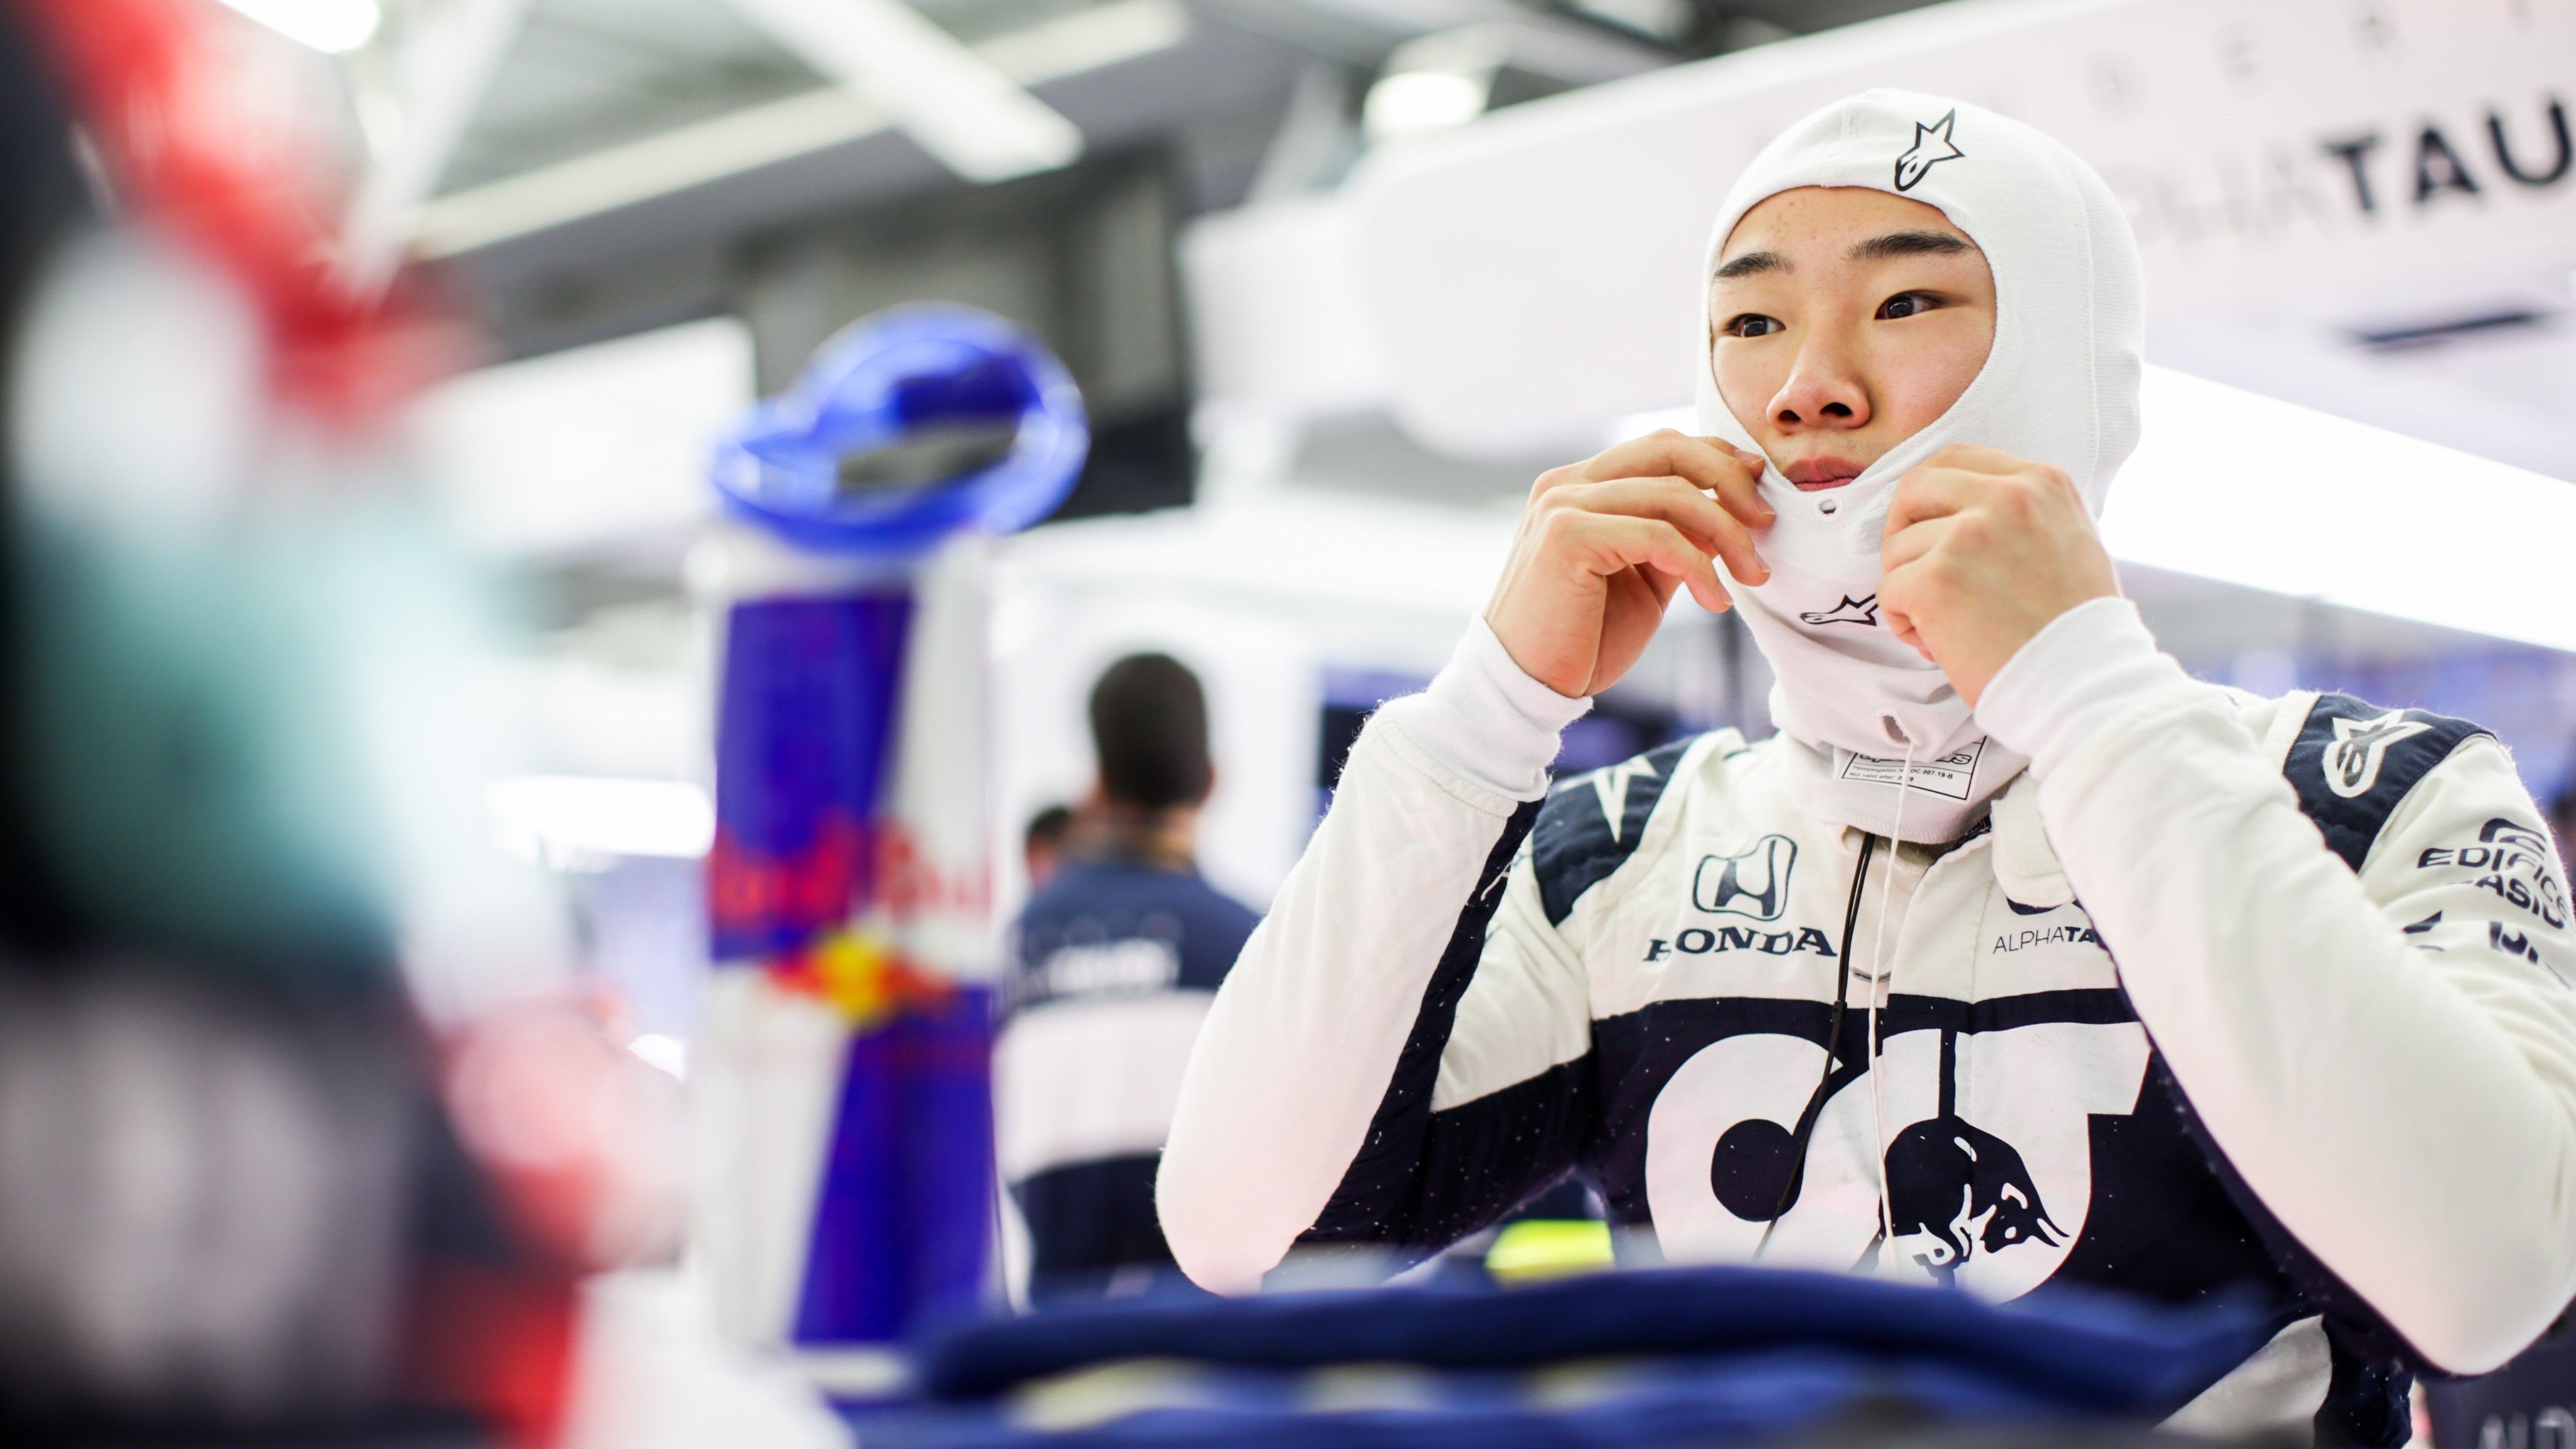 
                <strong>Gewinner: Yuki Tsunoda</strong><br>
                Unter dem Radar flog das Red-Bull-Nachwuchsteam AlphaTauri schon beim Rennstart nicht mehr. Dafür waren die Ergebnisse im Qualifying - mit einem zwischenzeitlichen zweiten Platz von Yuki Tsunoda in Q2 - zu gut. Dennoch dürften sich beim Renneinstand des Japaners einige Augenbrauen gehoben haben. Der 20-Jährige lenkte sein Gefährt souverän durch die Kurven des Bahrain International Circuit und sorgte für ein emotionales Highlight, als er Fernando Alonso überholte. "Mein Vater ist ein ziemlicher Alonso-Fan", verriet Tsunoda später. Im Ziel lief er als Neunter ein, seit 2012 hatte es kein Japaner mehr in die Top 10 geschafft. Zudem ließ er alle Fahrer außerhalb der Top-4-Teams hinter sich. Nicht schlecht für ein Debüt!  
              